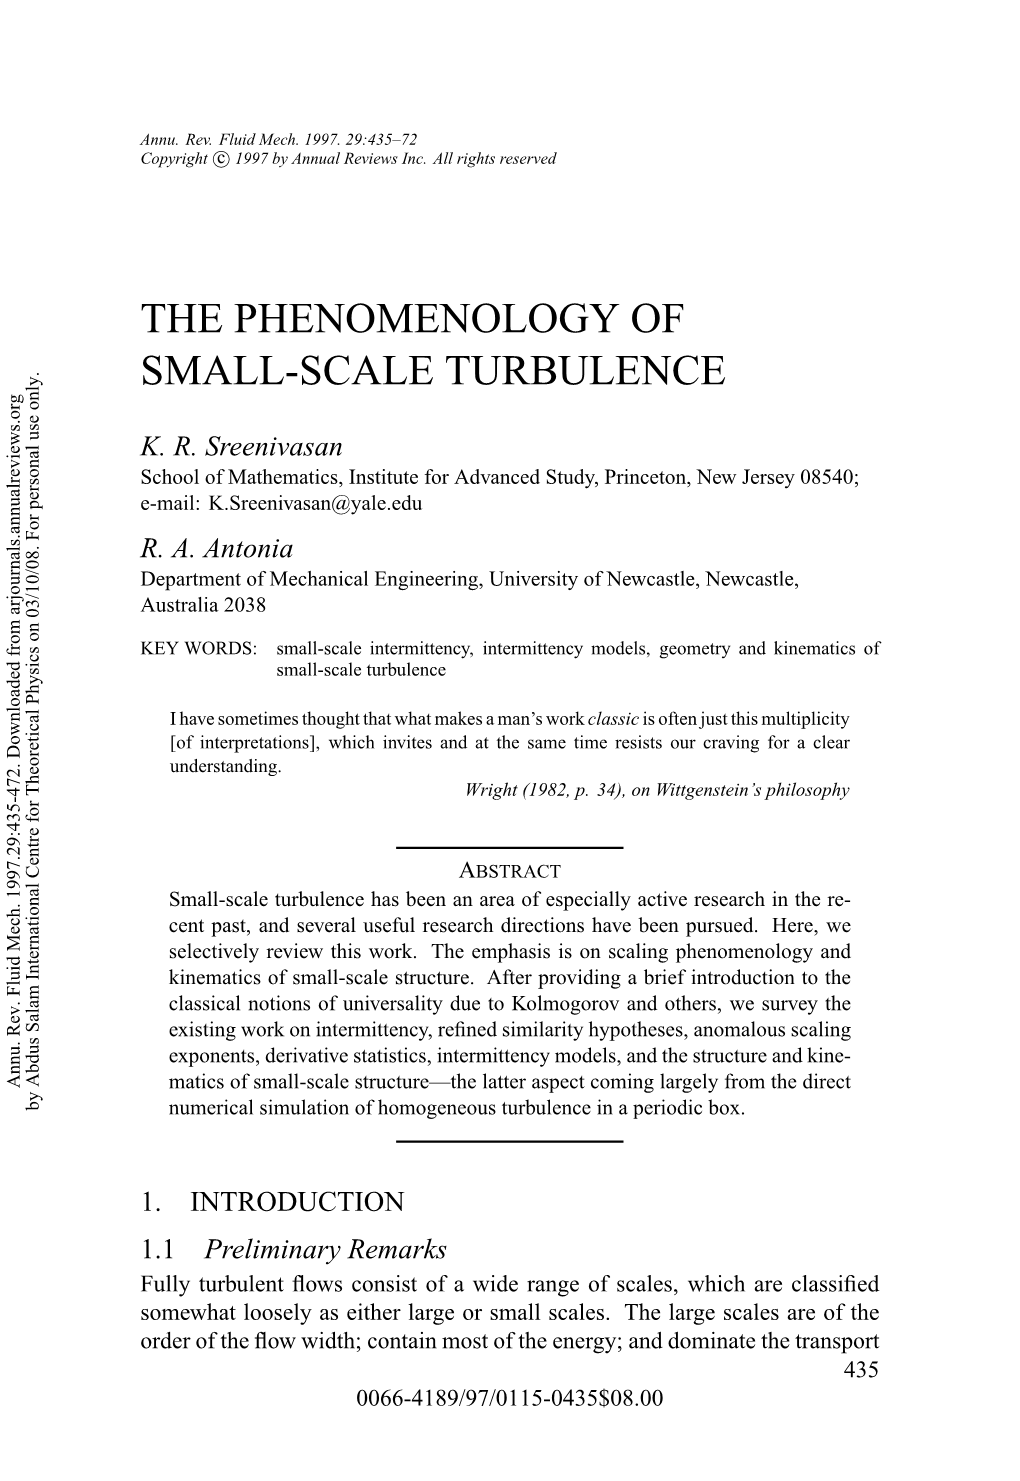 The Phenomenology of Small-Scale Turbulence